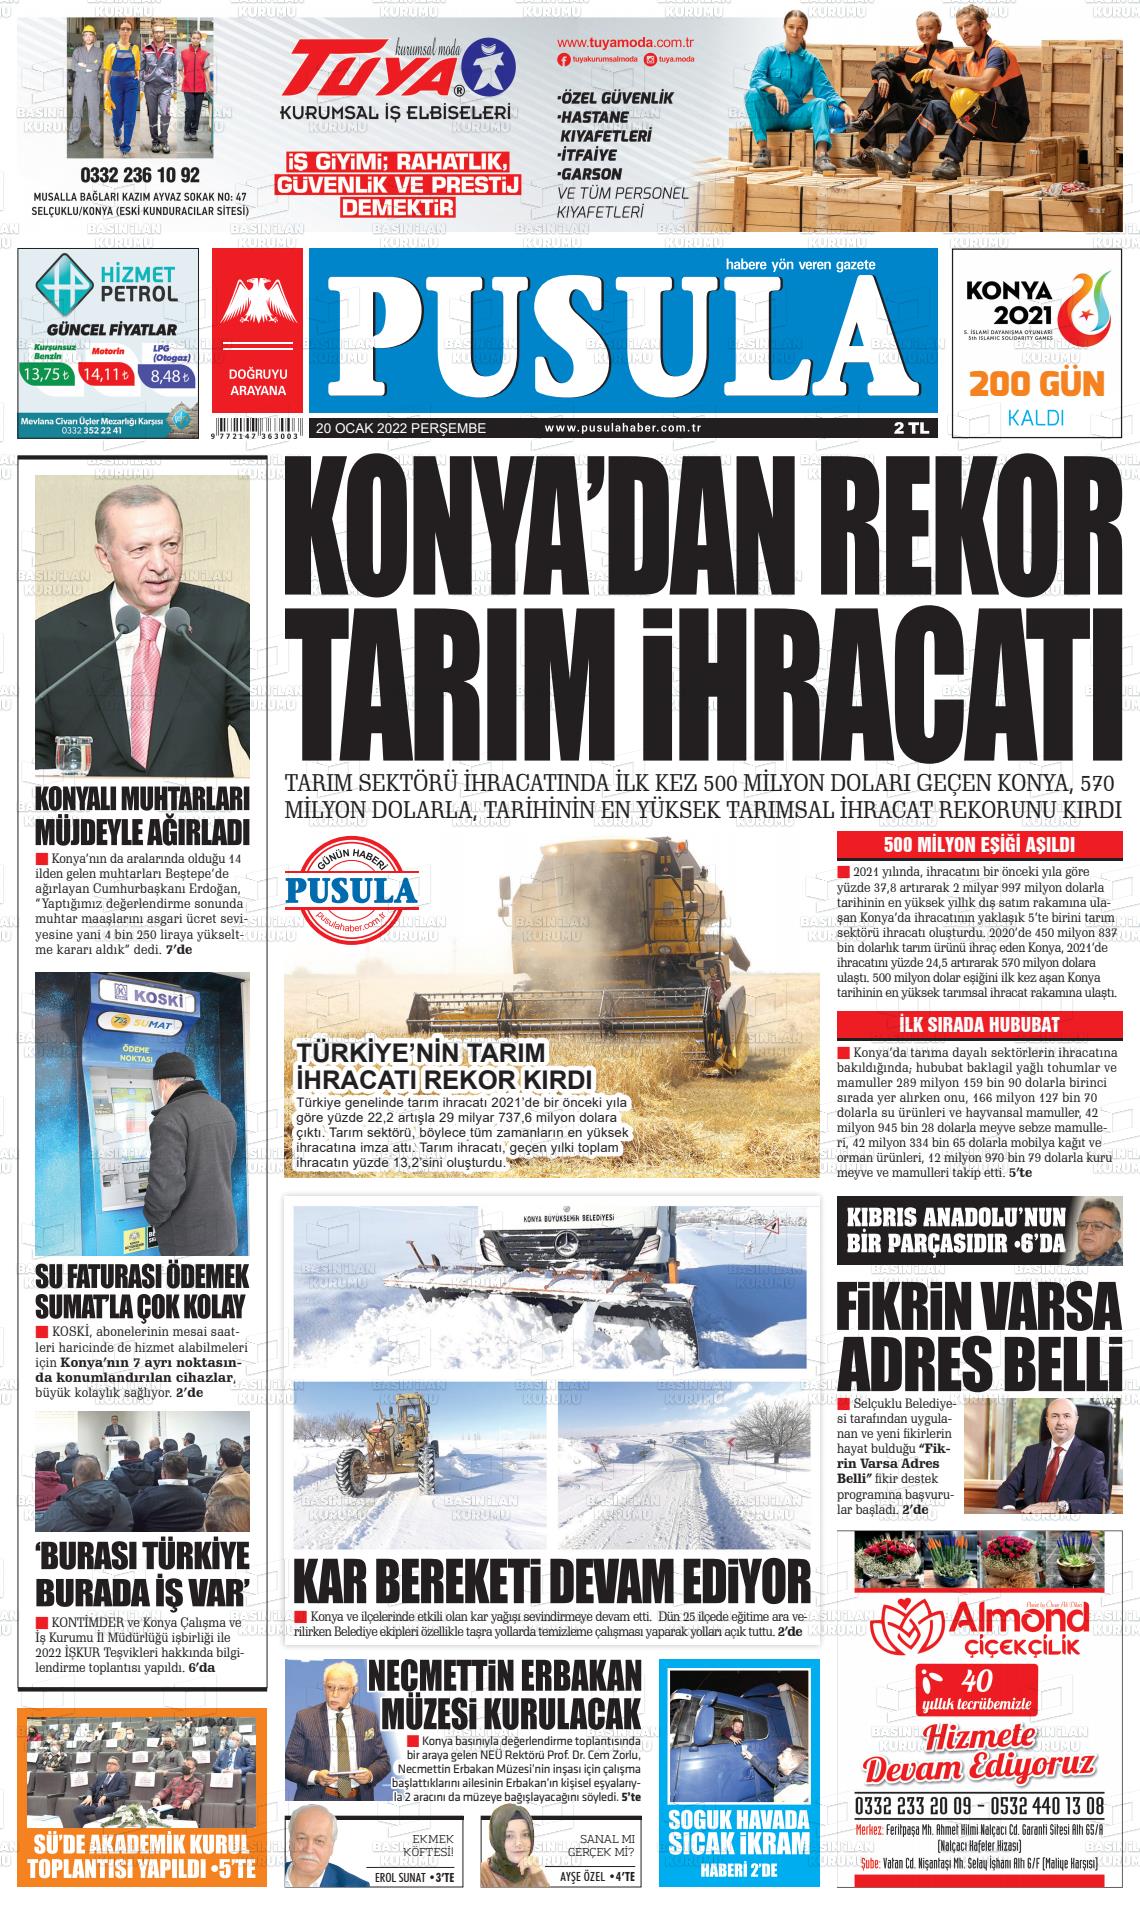 20 Ocak 2022 Pusula Haber Gazete Manşeti